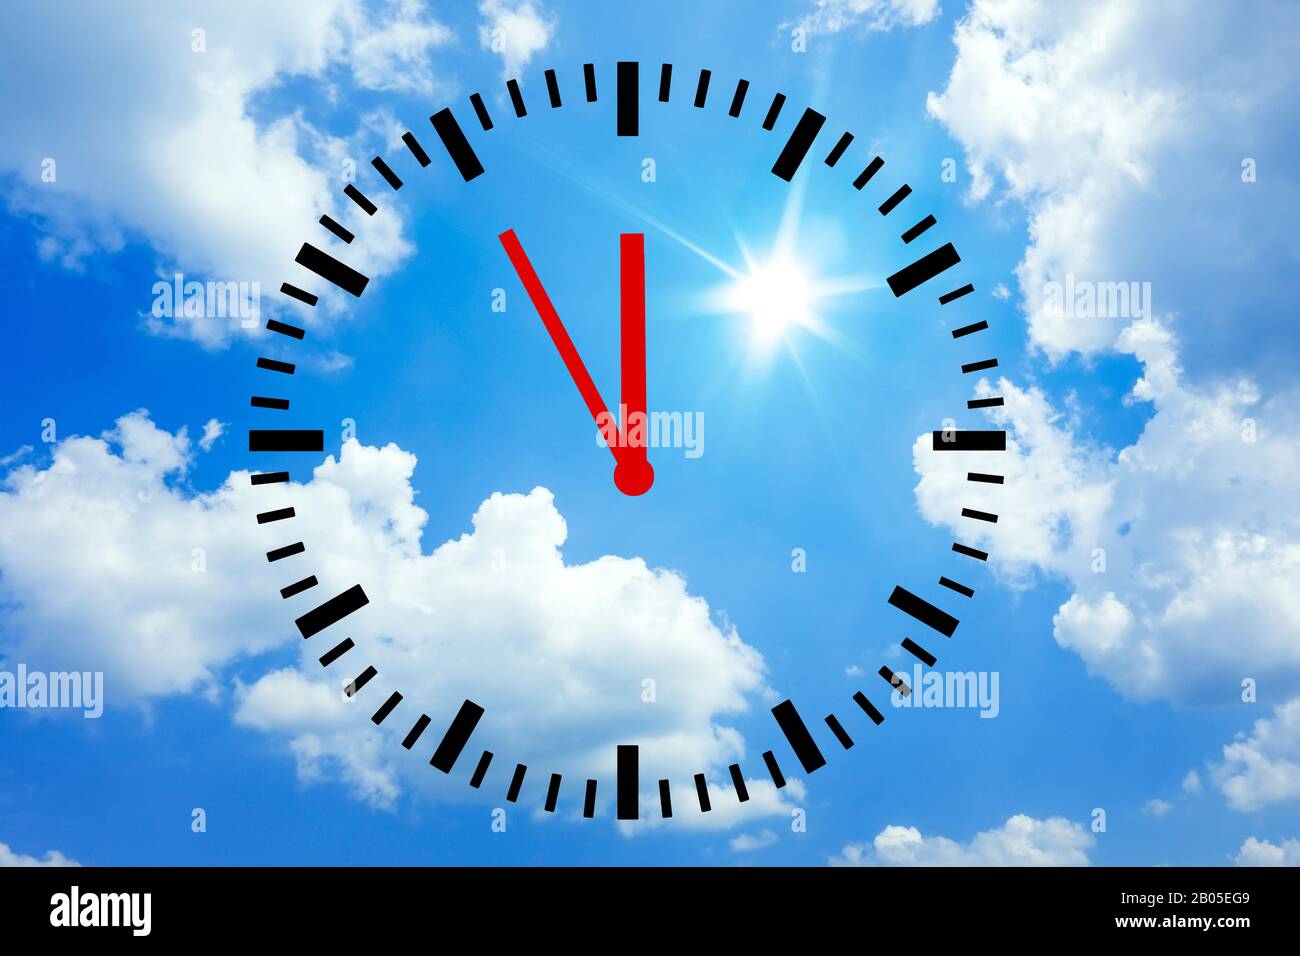 Reloj muestra 5 antes de 12 frente al cielo azul con nubes, cambio climático, composición, Alemania Foto de stock